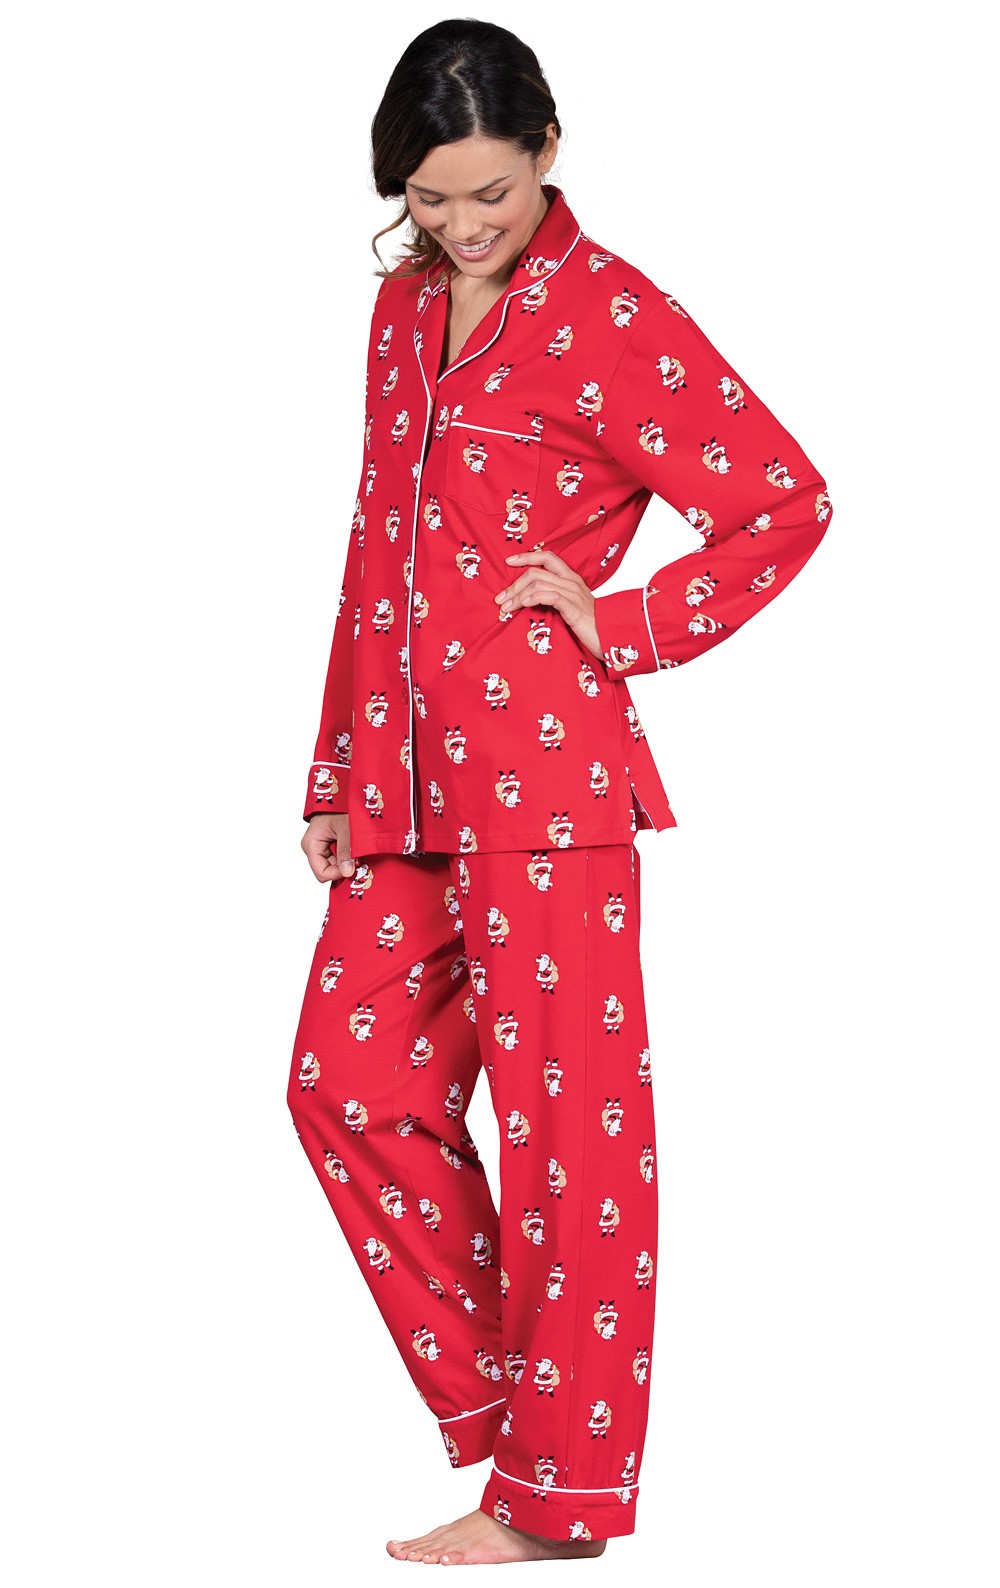 St. Nick Boyfriend Pajamas in Women's Cotton Pajamas | Pajamas for ...